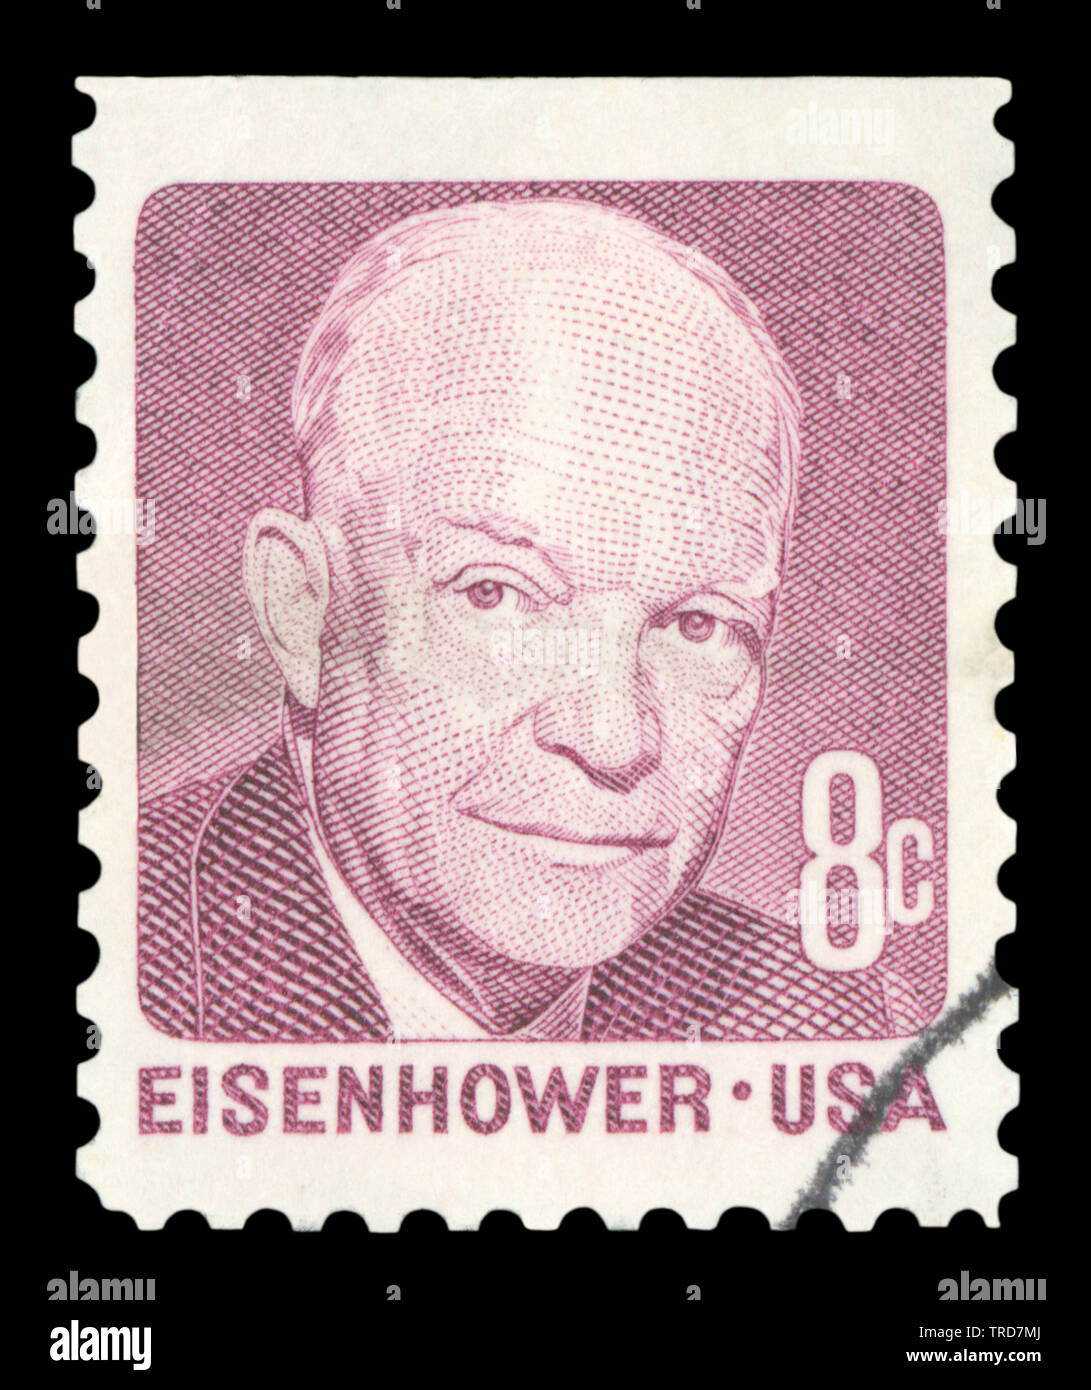 Vereinigte STAATEN VON AMERIKA - ca. 1971: einen gebrauchten Briefmarke aus den USA, zeigt ein Porträt des ehemaligen US-Präsidenten Dwight D. Eisenhower, circa 1971. Stockfoto